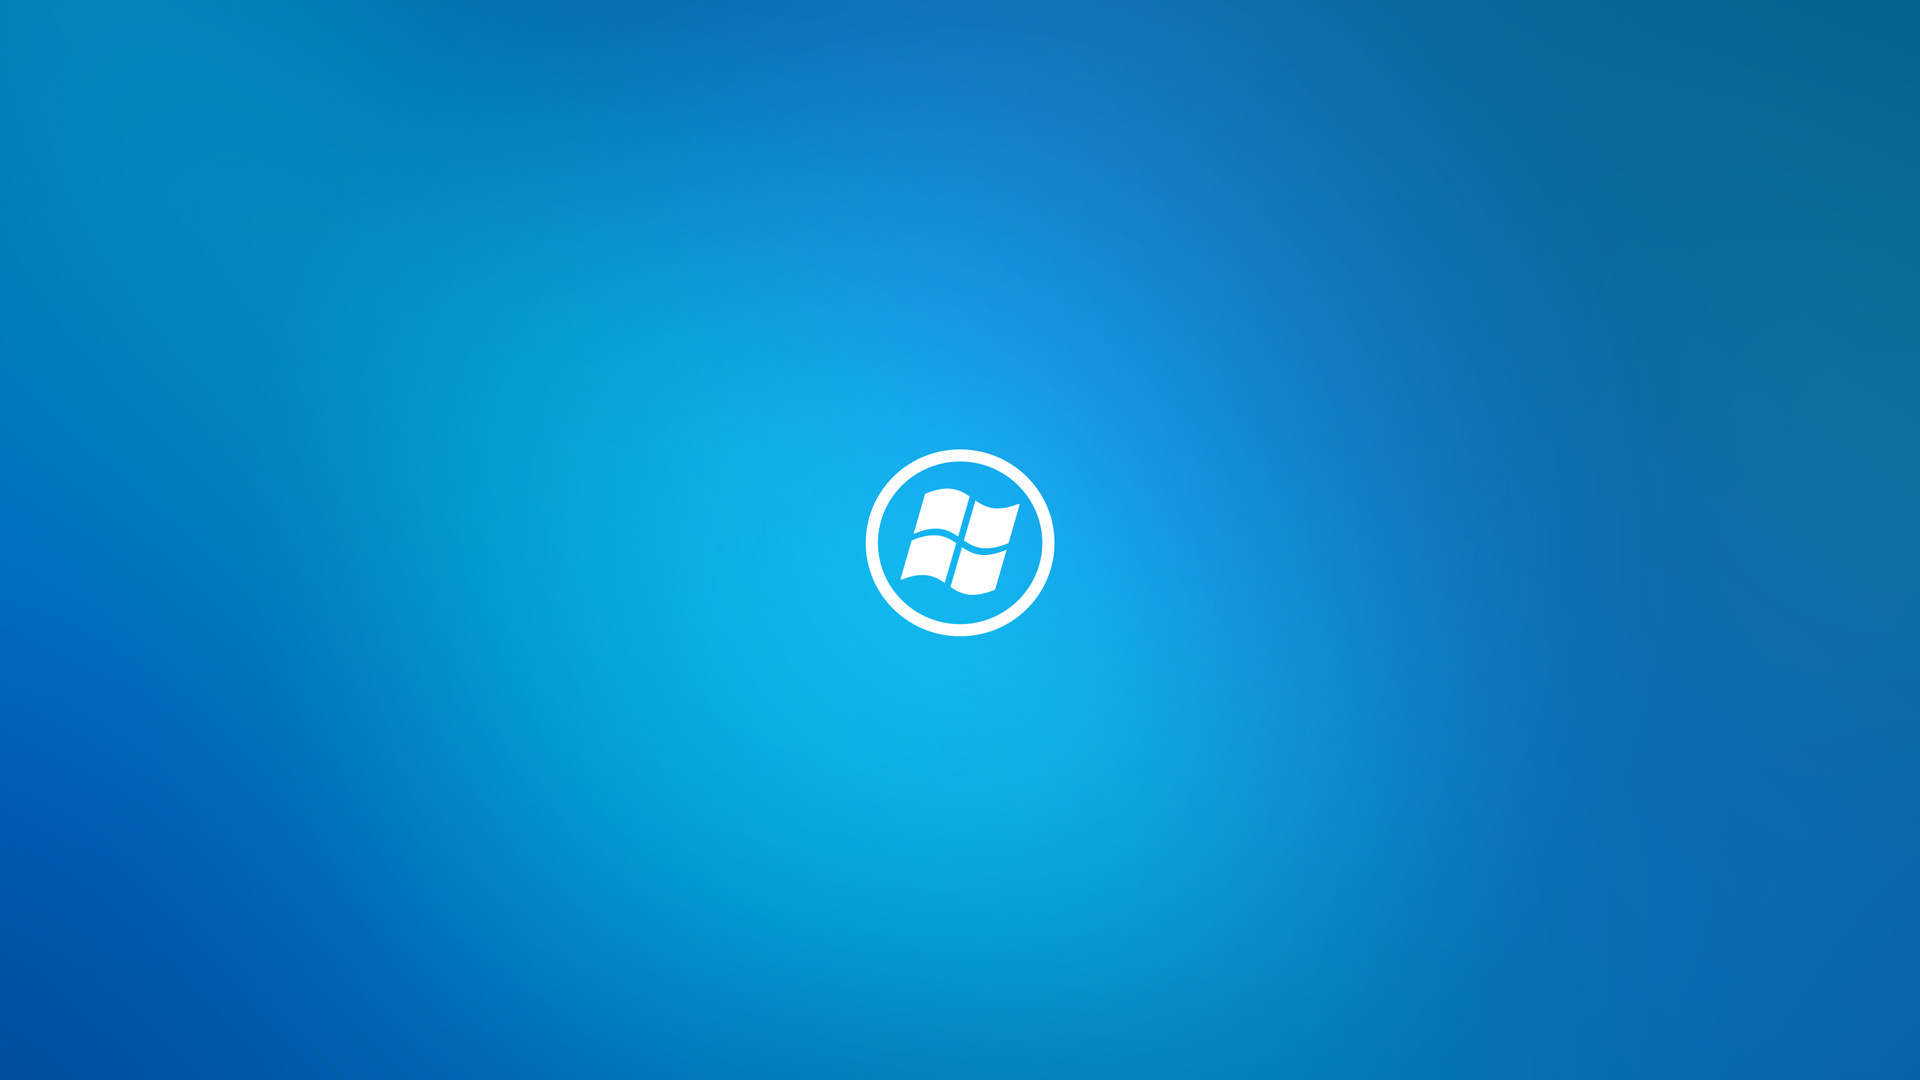 Windows 8 Wallpaper Blue wallpaper – 804555